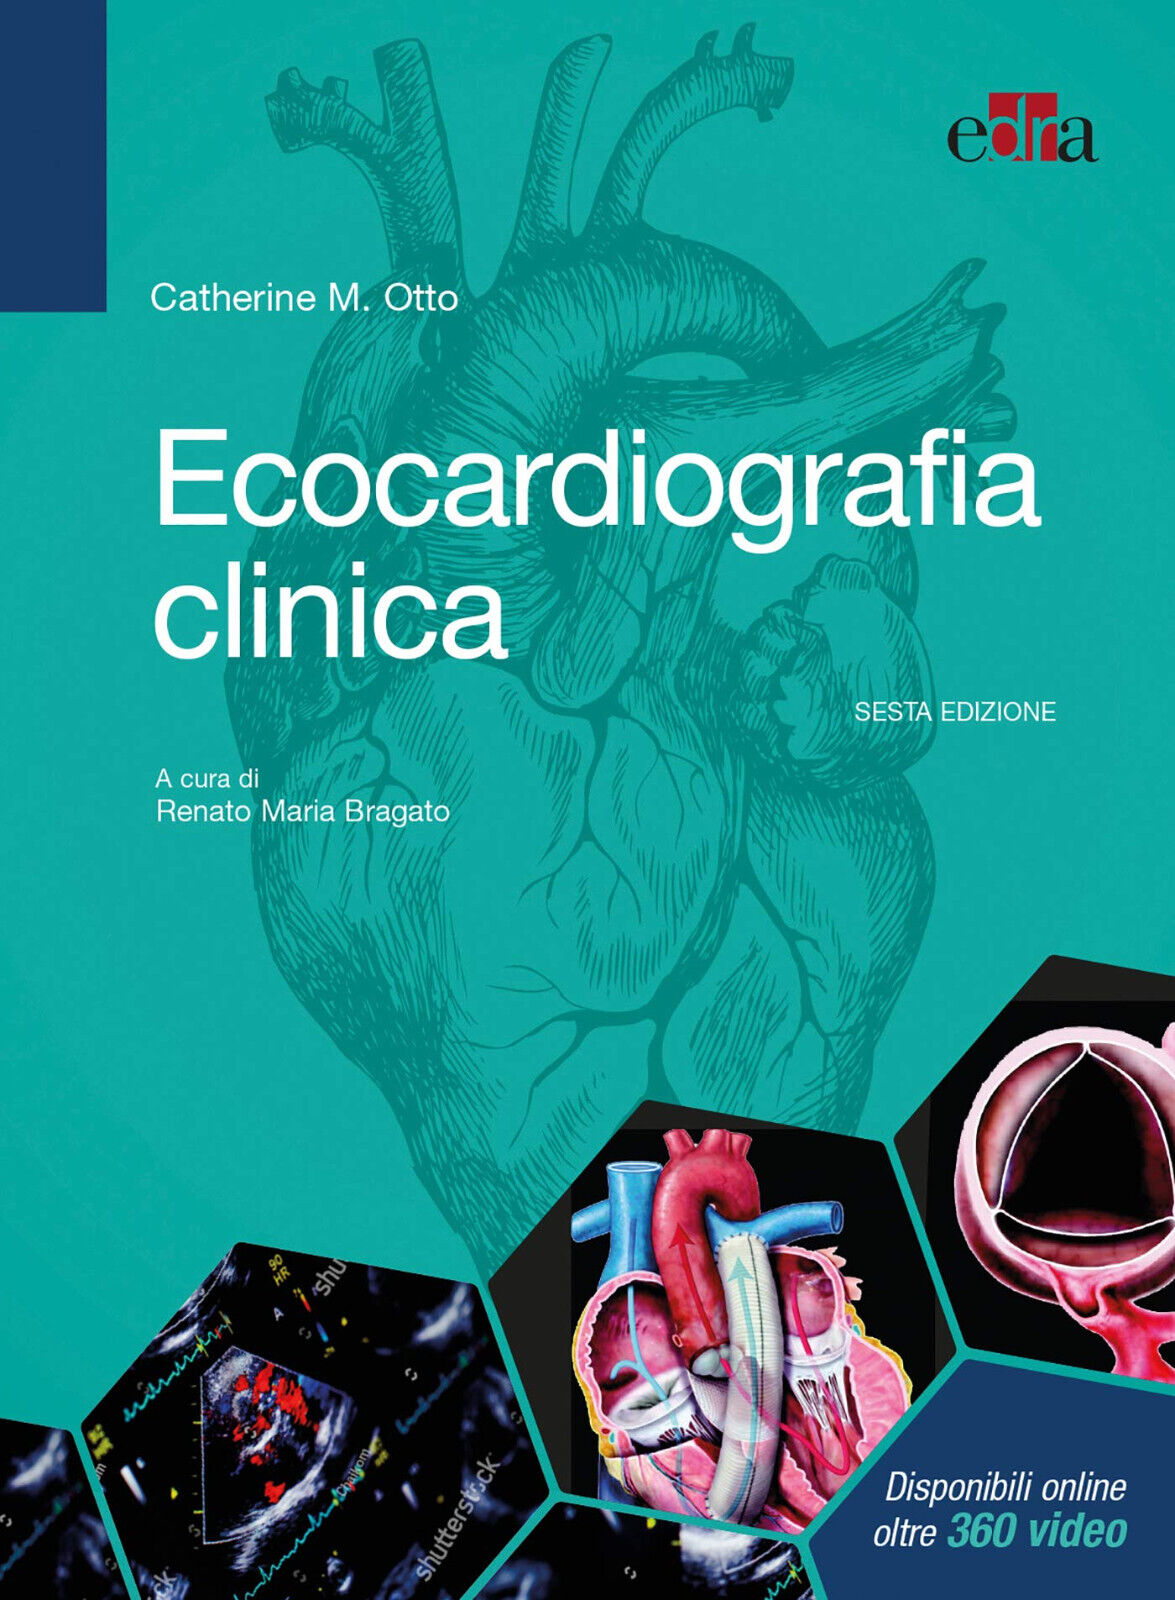 Ecocardiografia clinica - Catherine M. Otto - Edra, 2019